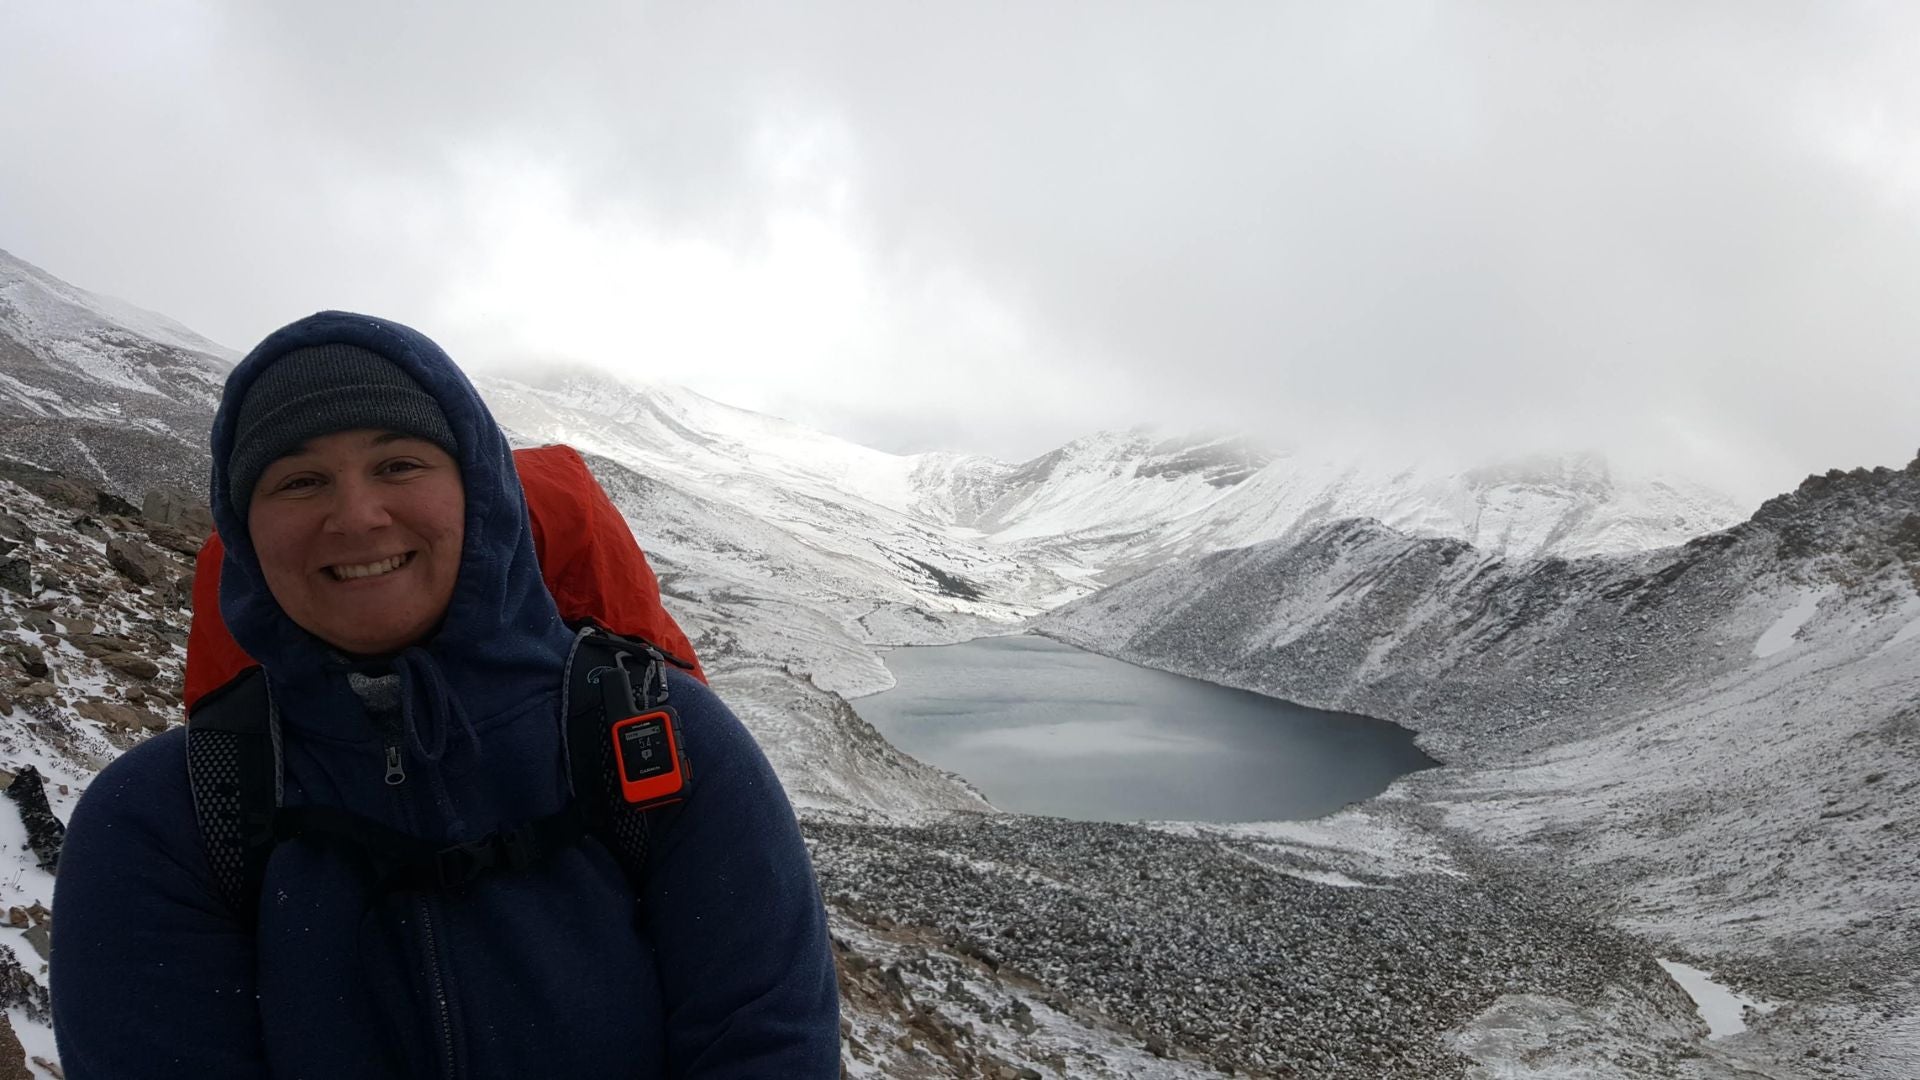 Ashley Ferreira smiling while hiking on a snowy mountain.